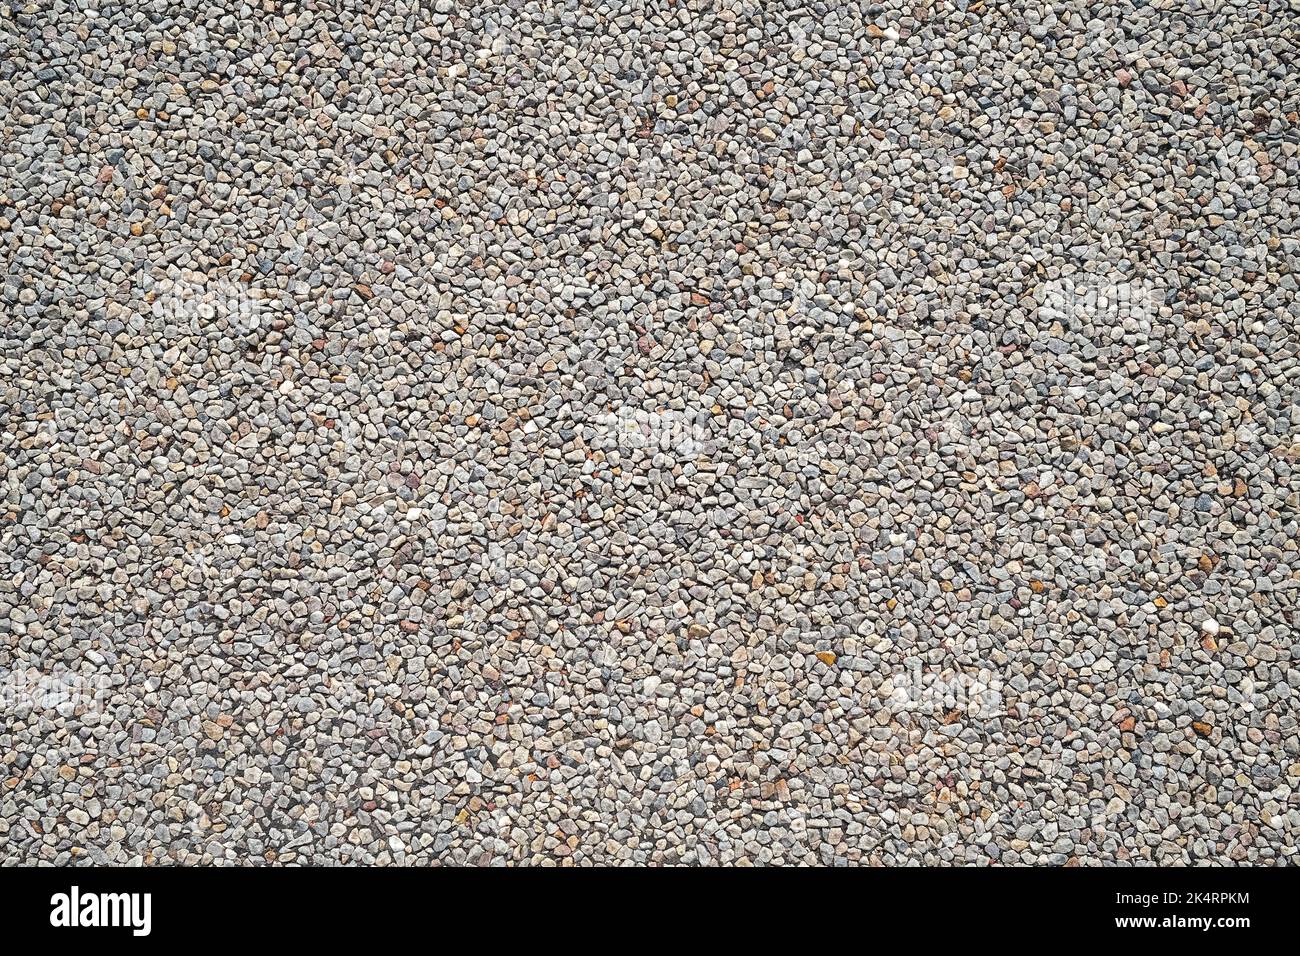 Muster aus Kies auf der Straße, Hintergrund graue Steinkiesel Stockfoto